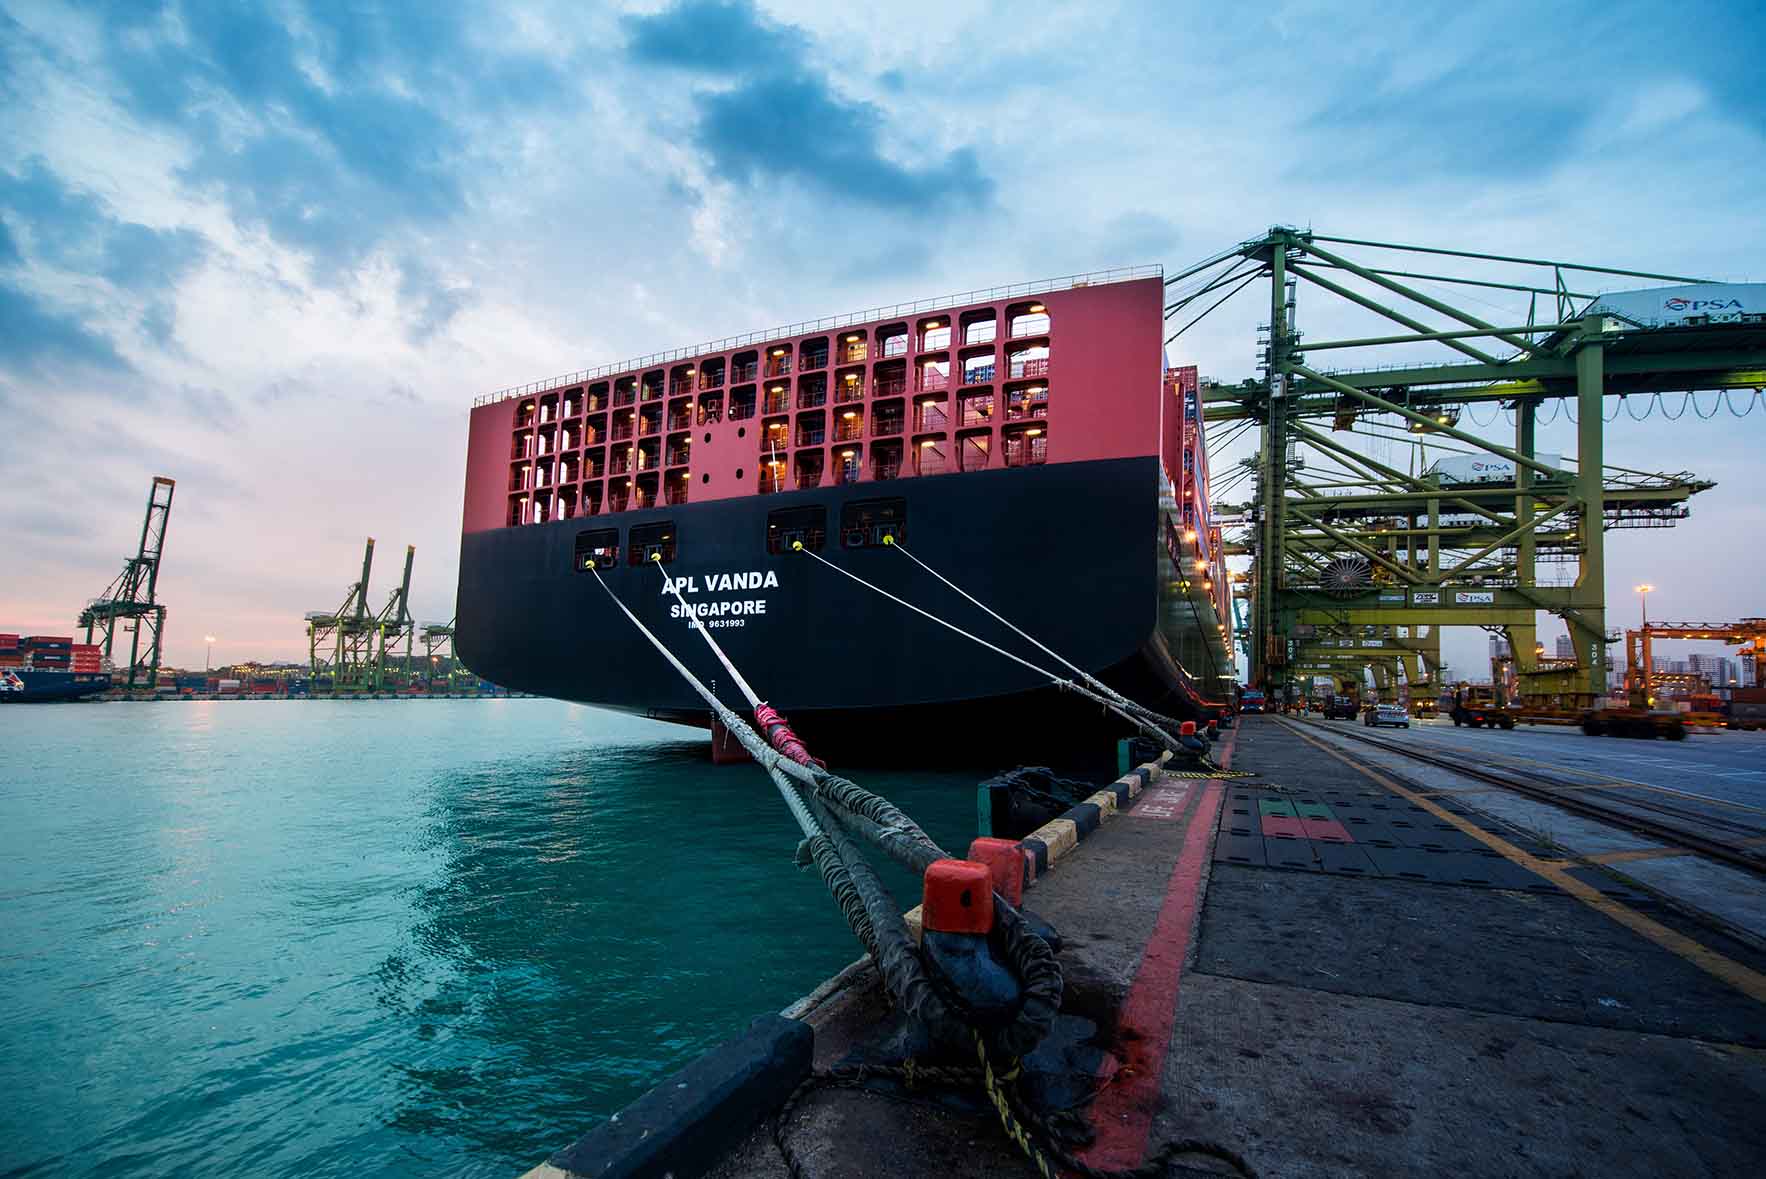 APL Vanda - 17,000 TEU containership at berth (PSA, Singapore) .